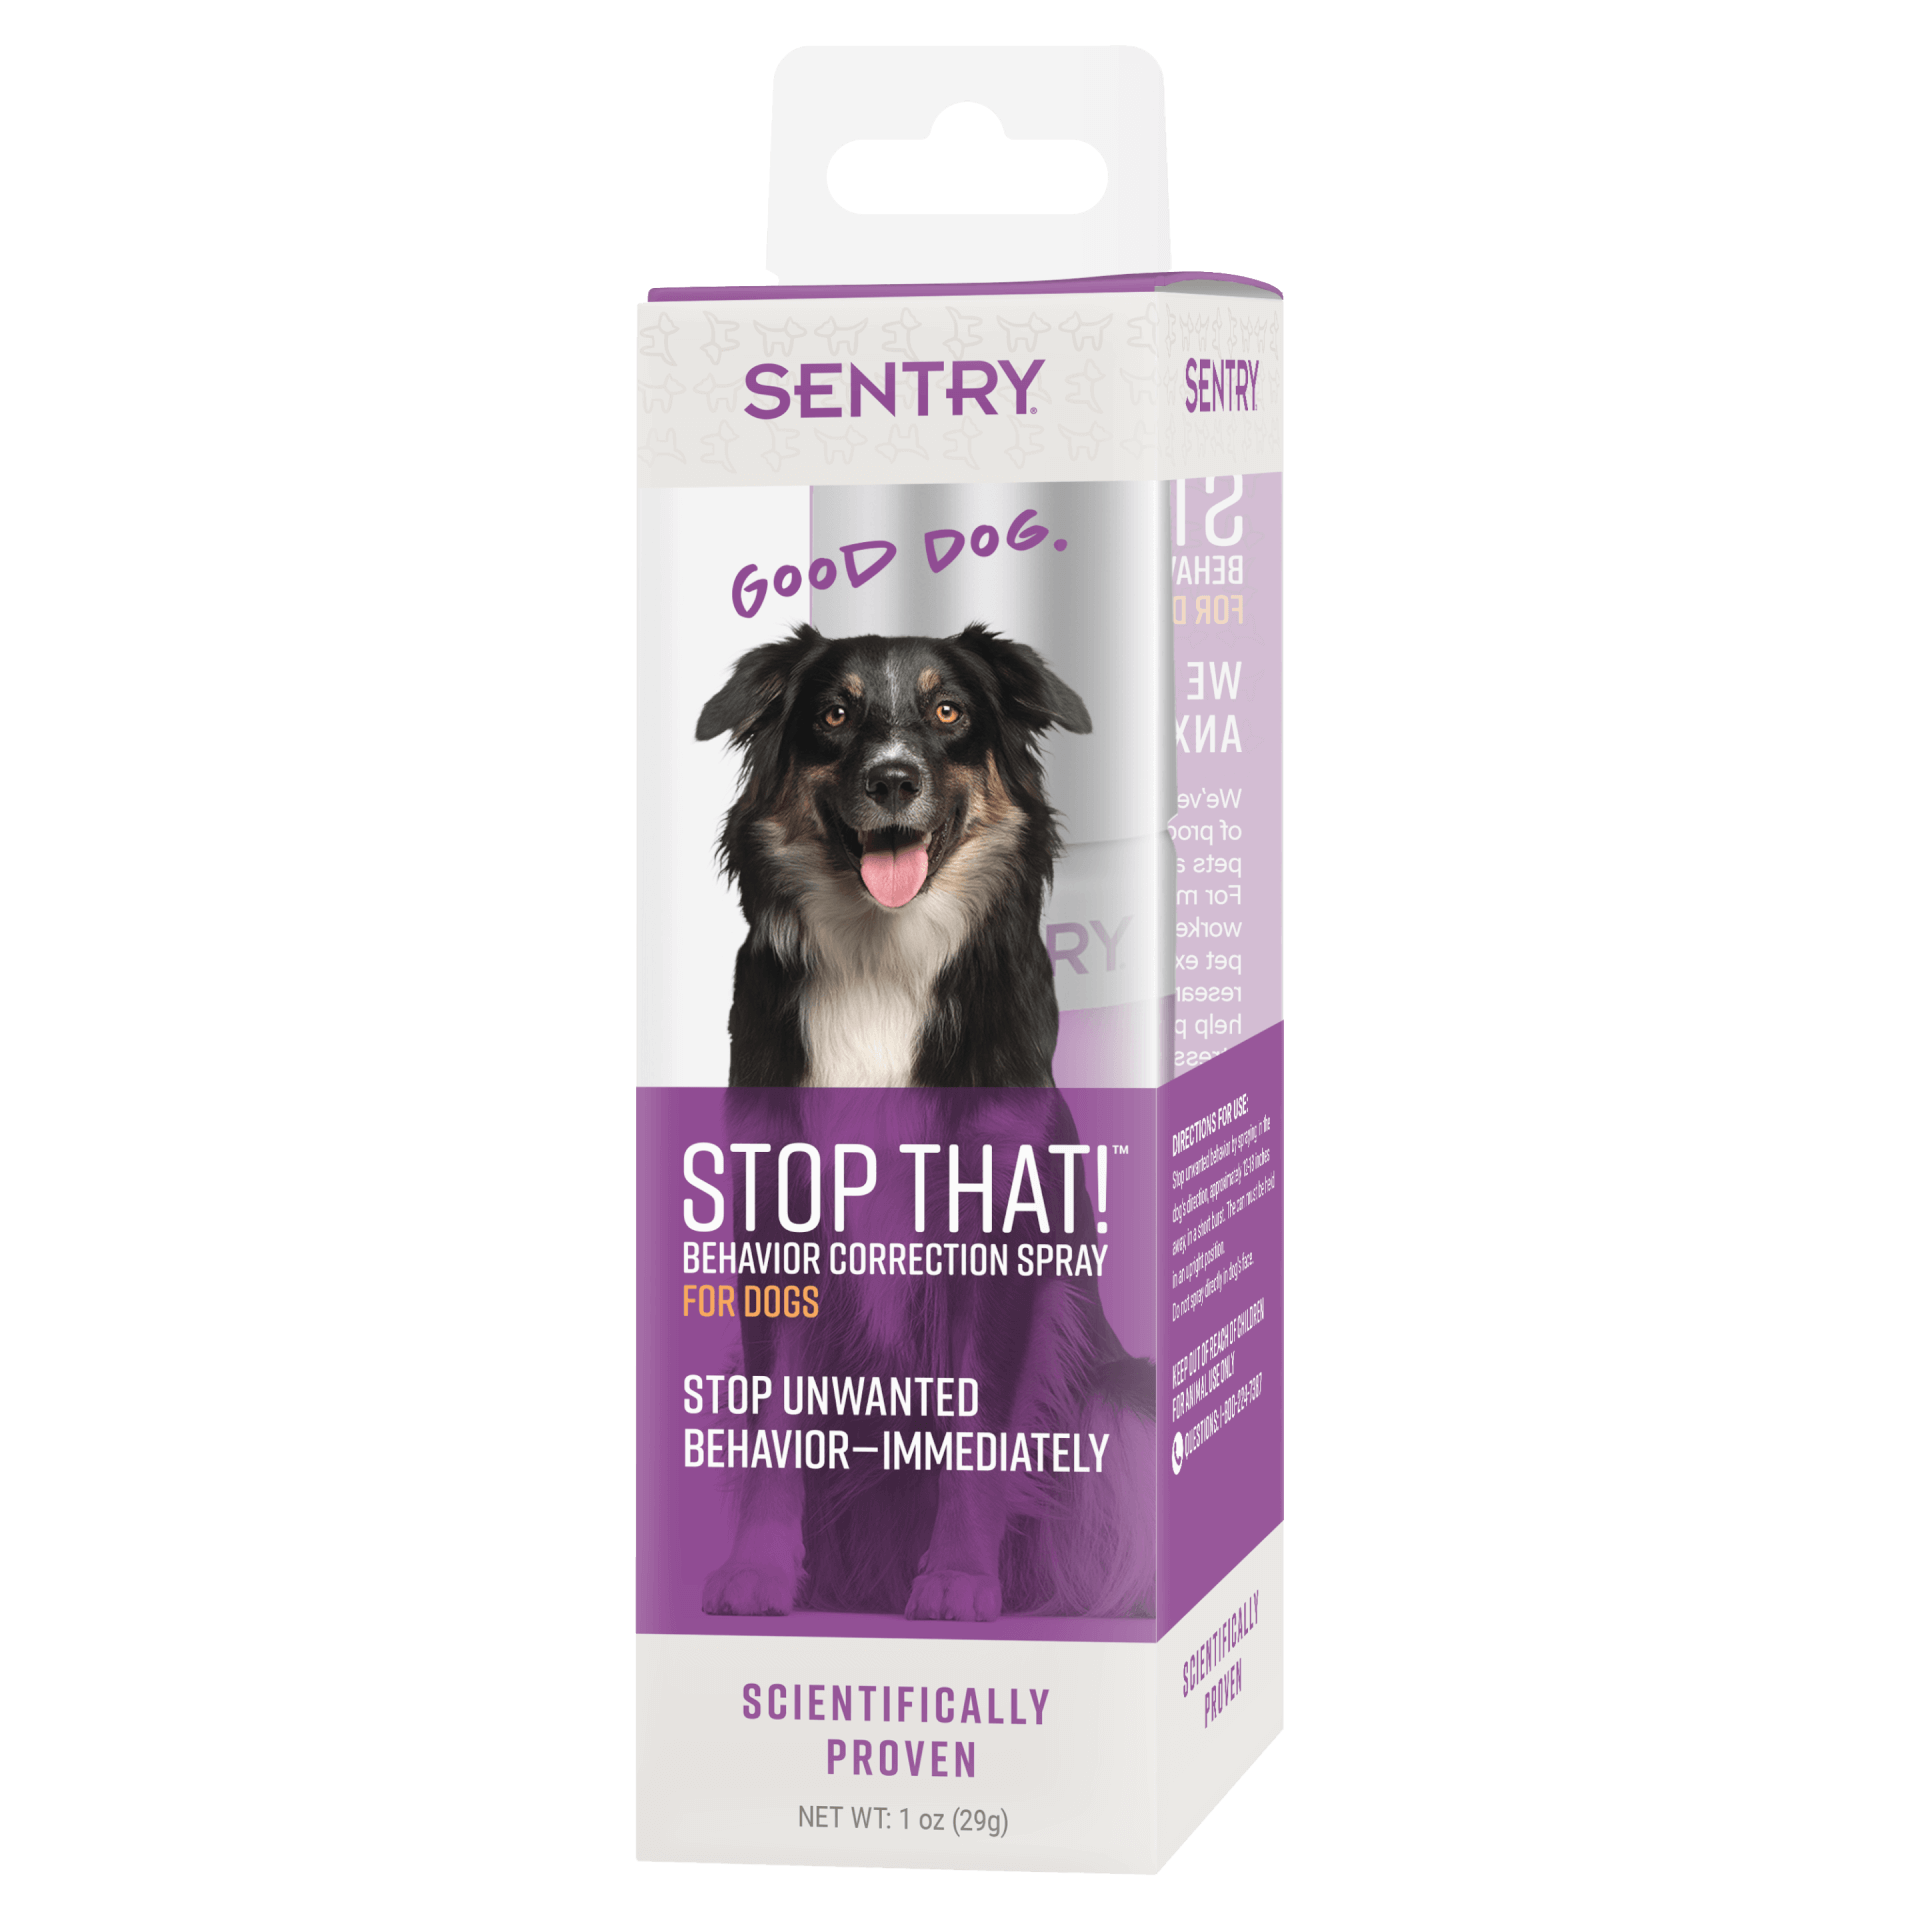 50ml Pet Calming Spray Prevent Howling Pet Liquid Spray Pet Dog